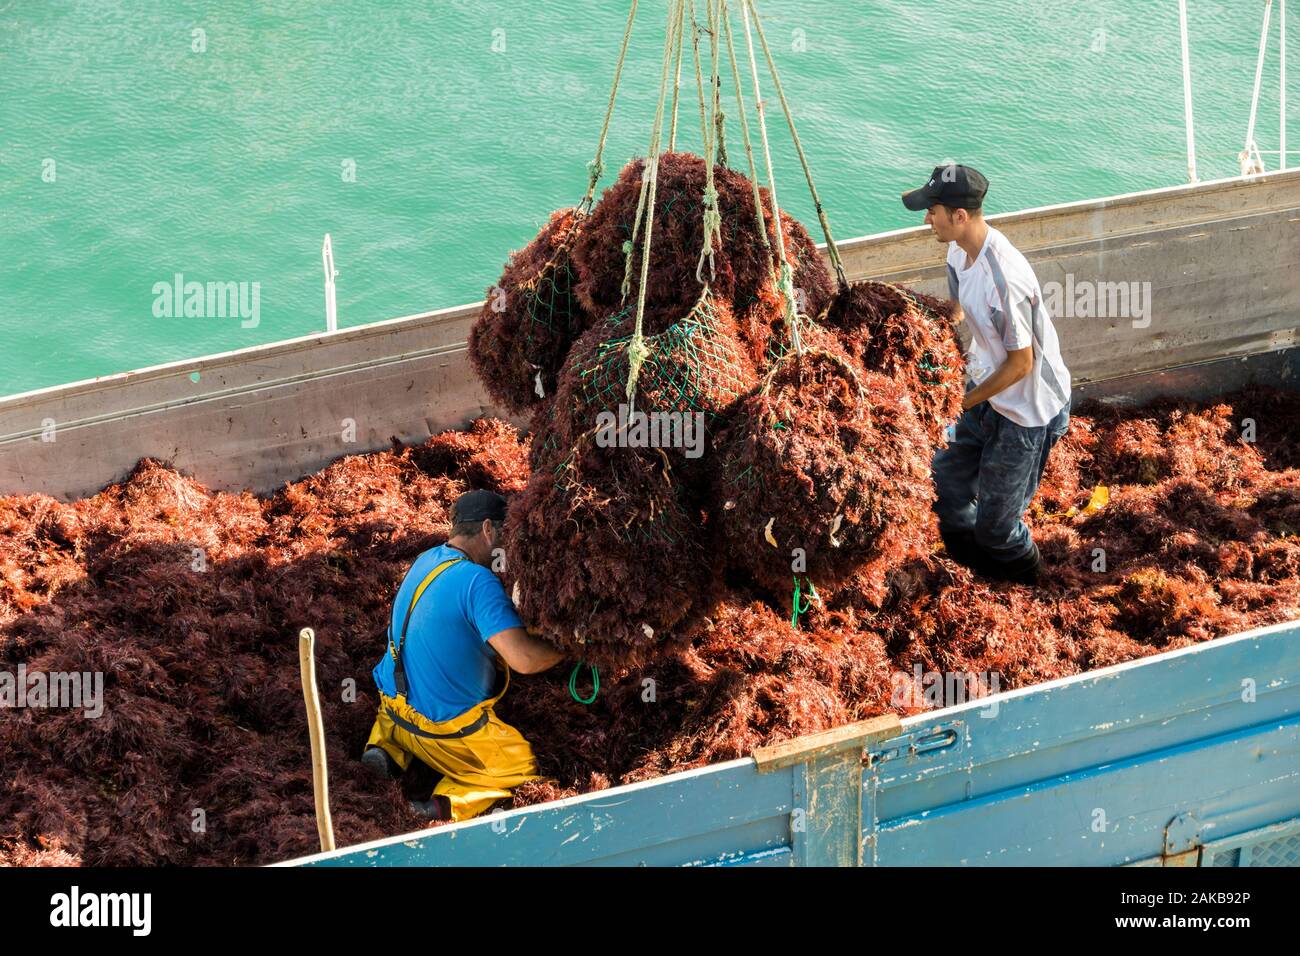 Llanes, Spanien, zwei Fischer sammeln rote Algen (gelidium Sesquipedale) in Kosmetika verwendet, auf einem Boot im Hafen von Llanes in Asturien Stockfoto